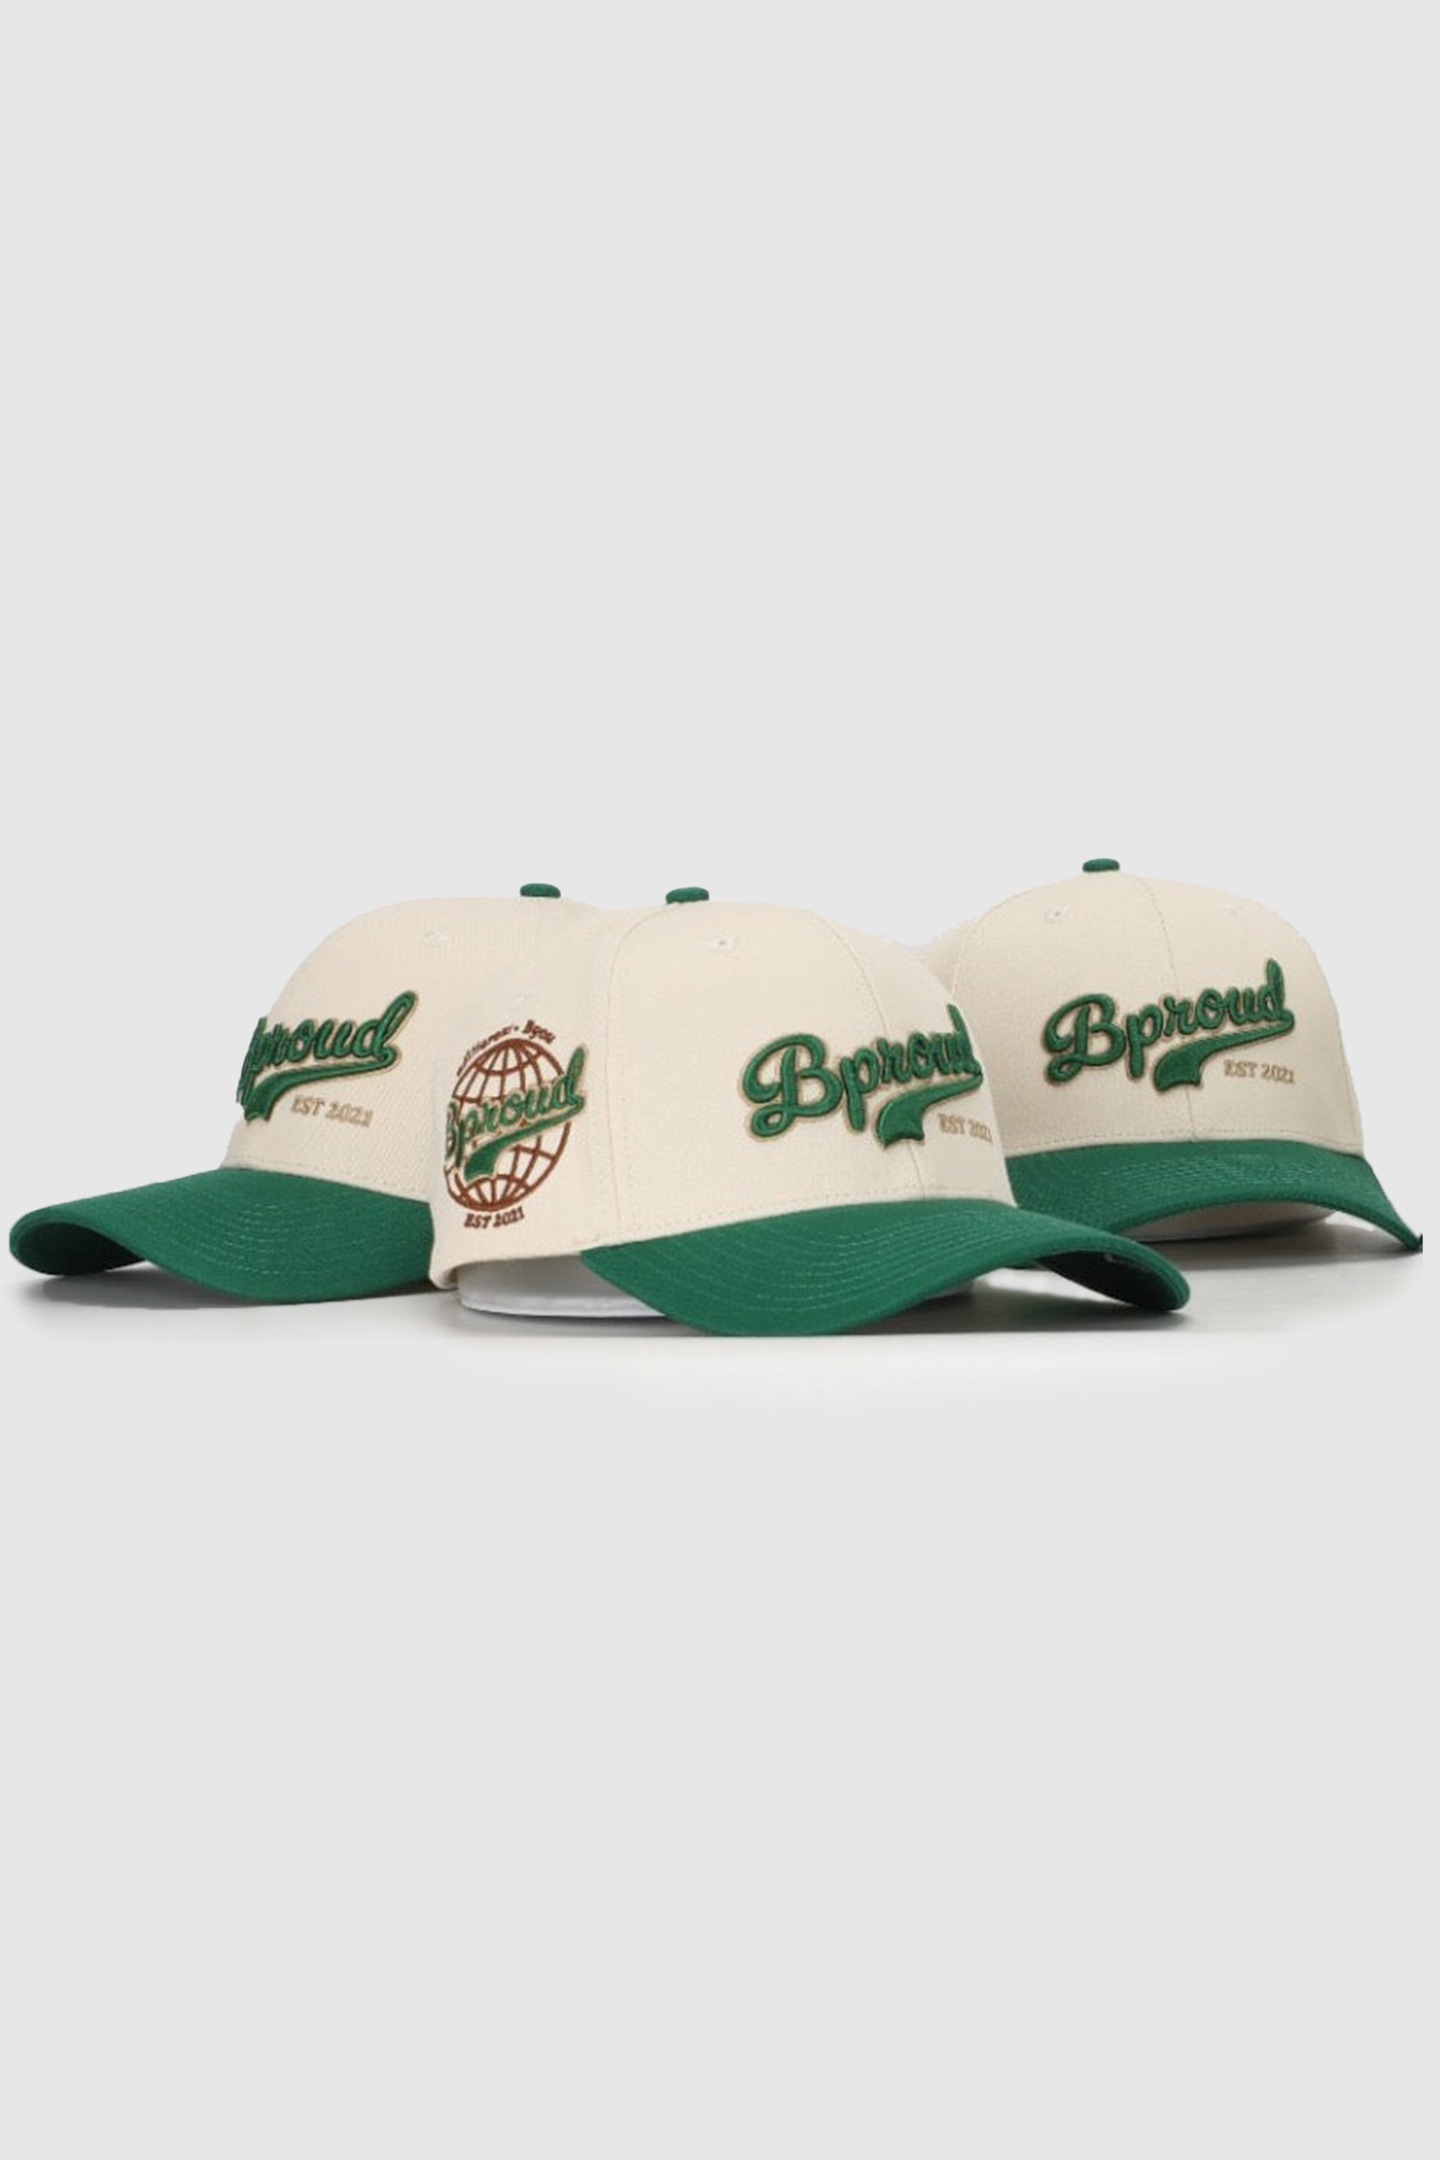 Bproud "Forest Green" Baseball Cap